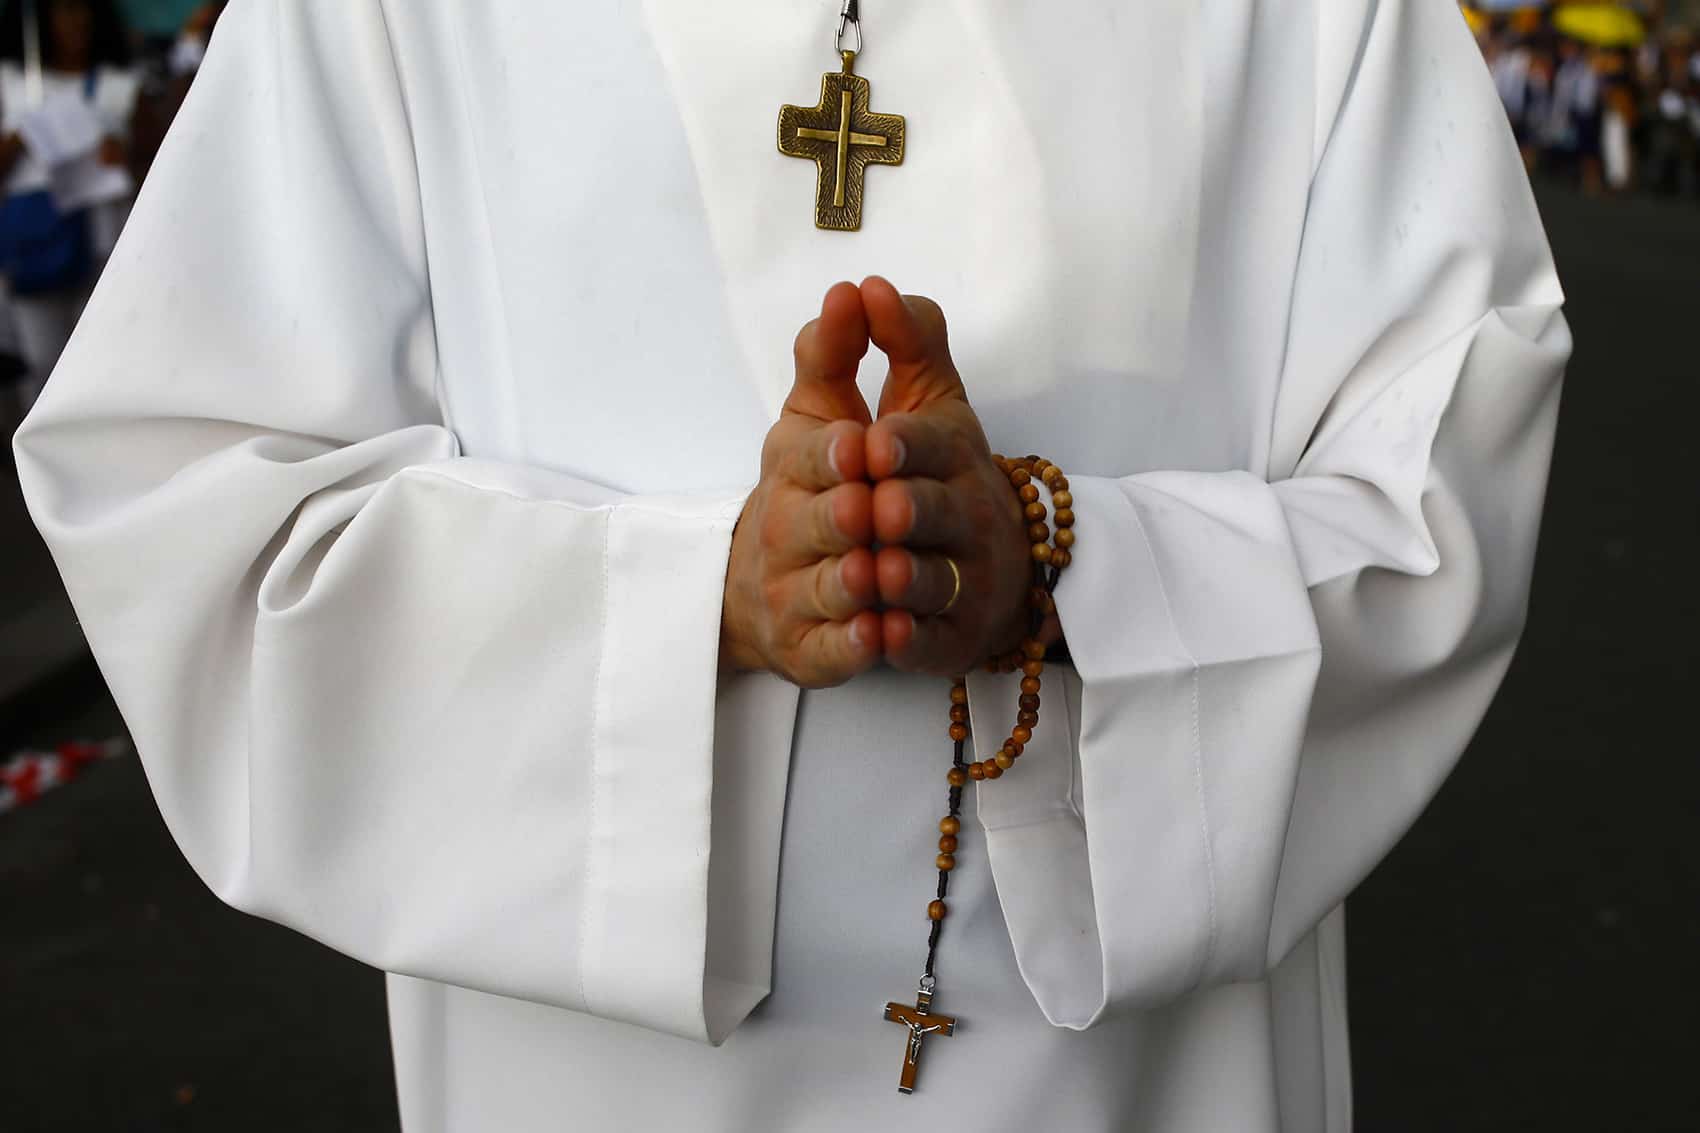 Ragazzo denuncia violenze sessuali da parte di un prete: avrebbe subito abusi dai 9 ai 18 anni